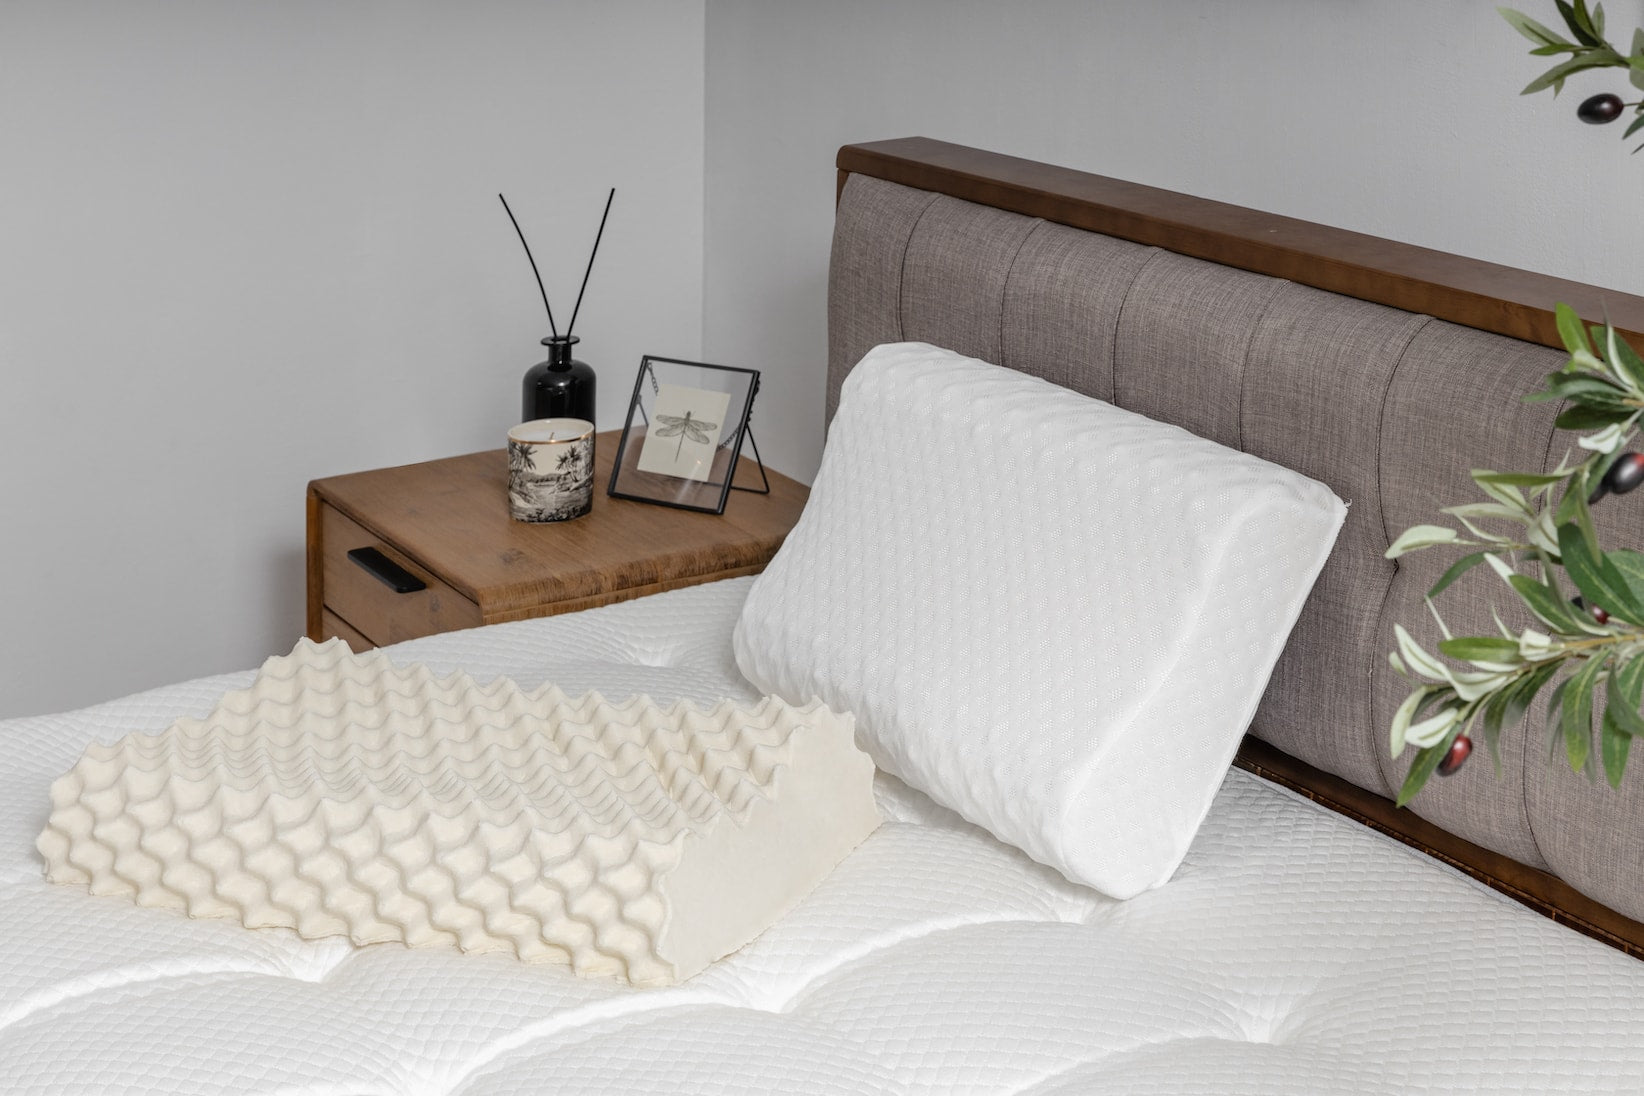 兩顆覺醒家居顆粒按摩枕放置在床墊上的產品照片